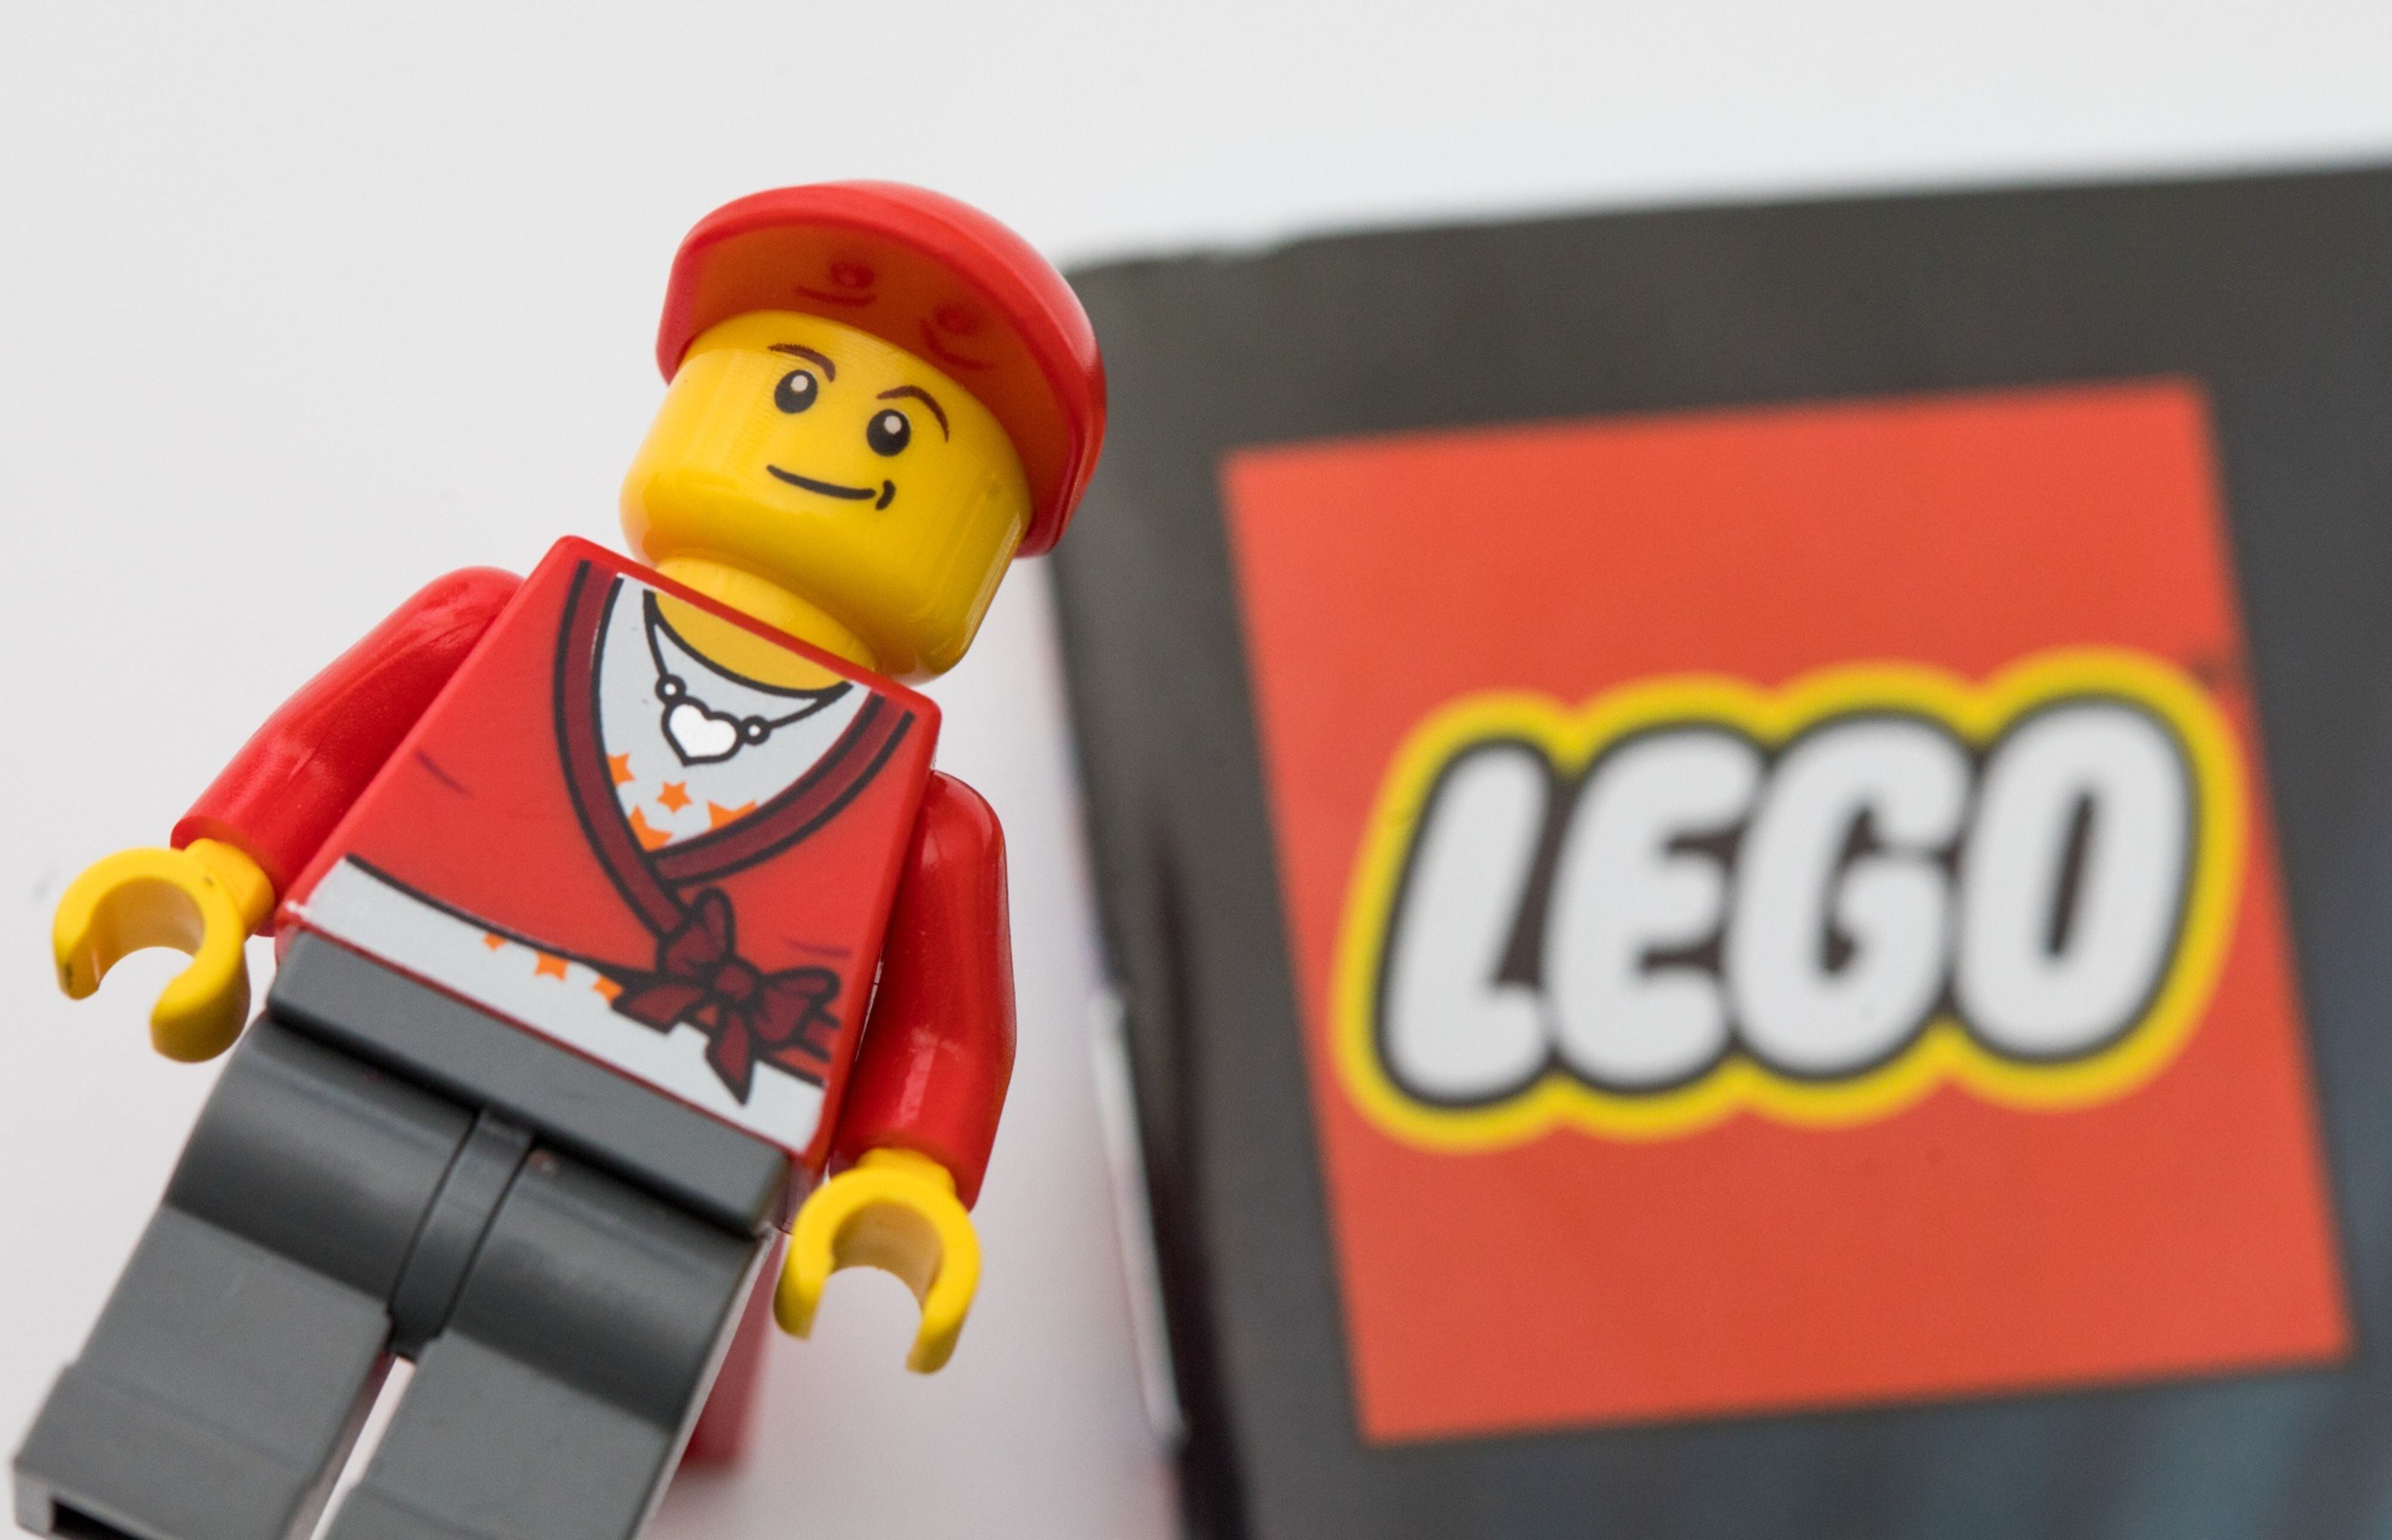 Lego quiere ser el nuevo amigo del ambiente: planea inversión para reducir exceso de plástico